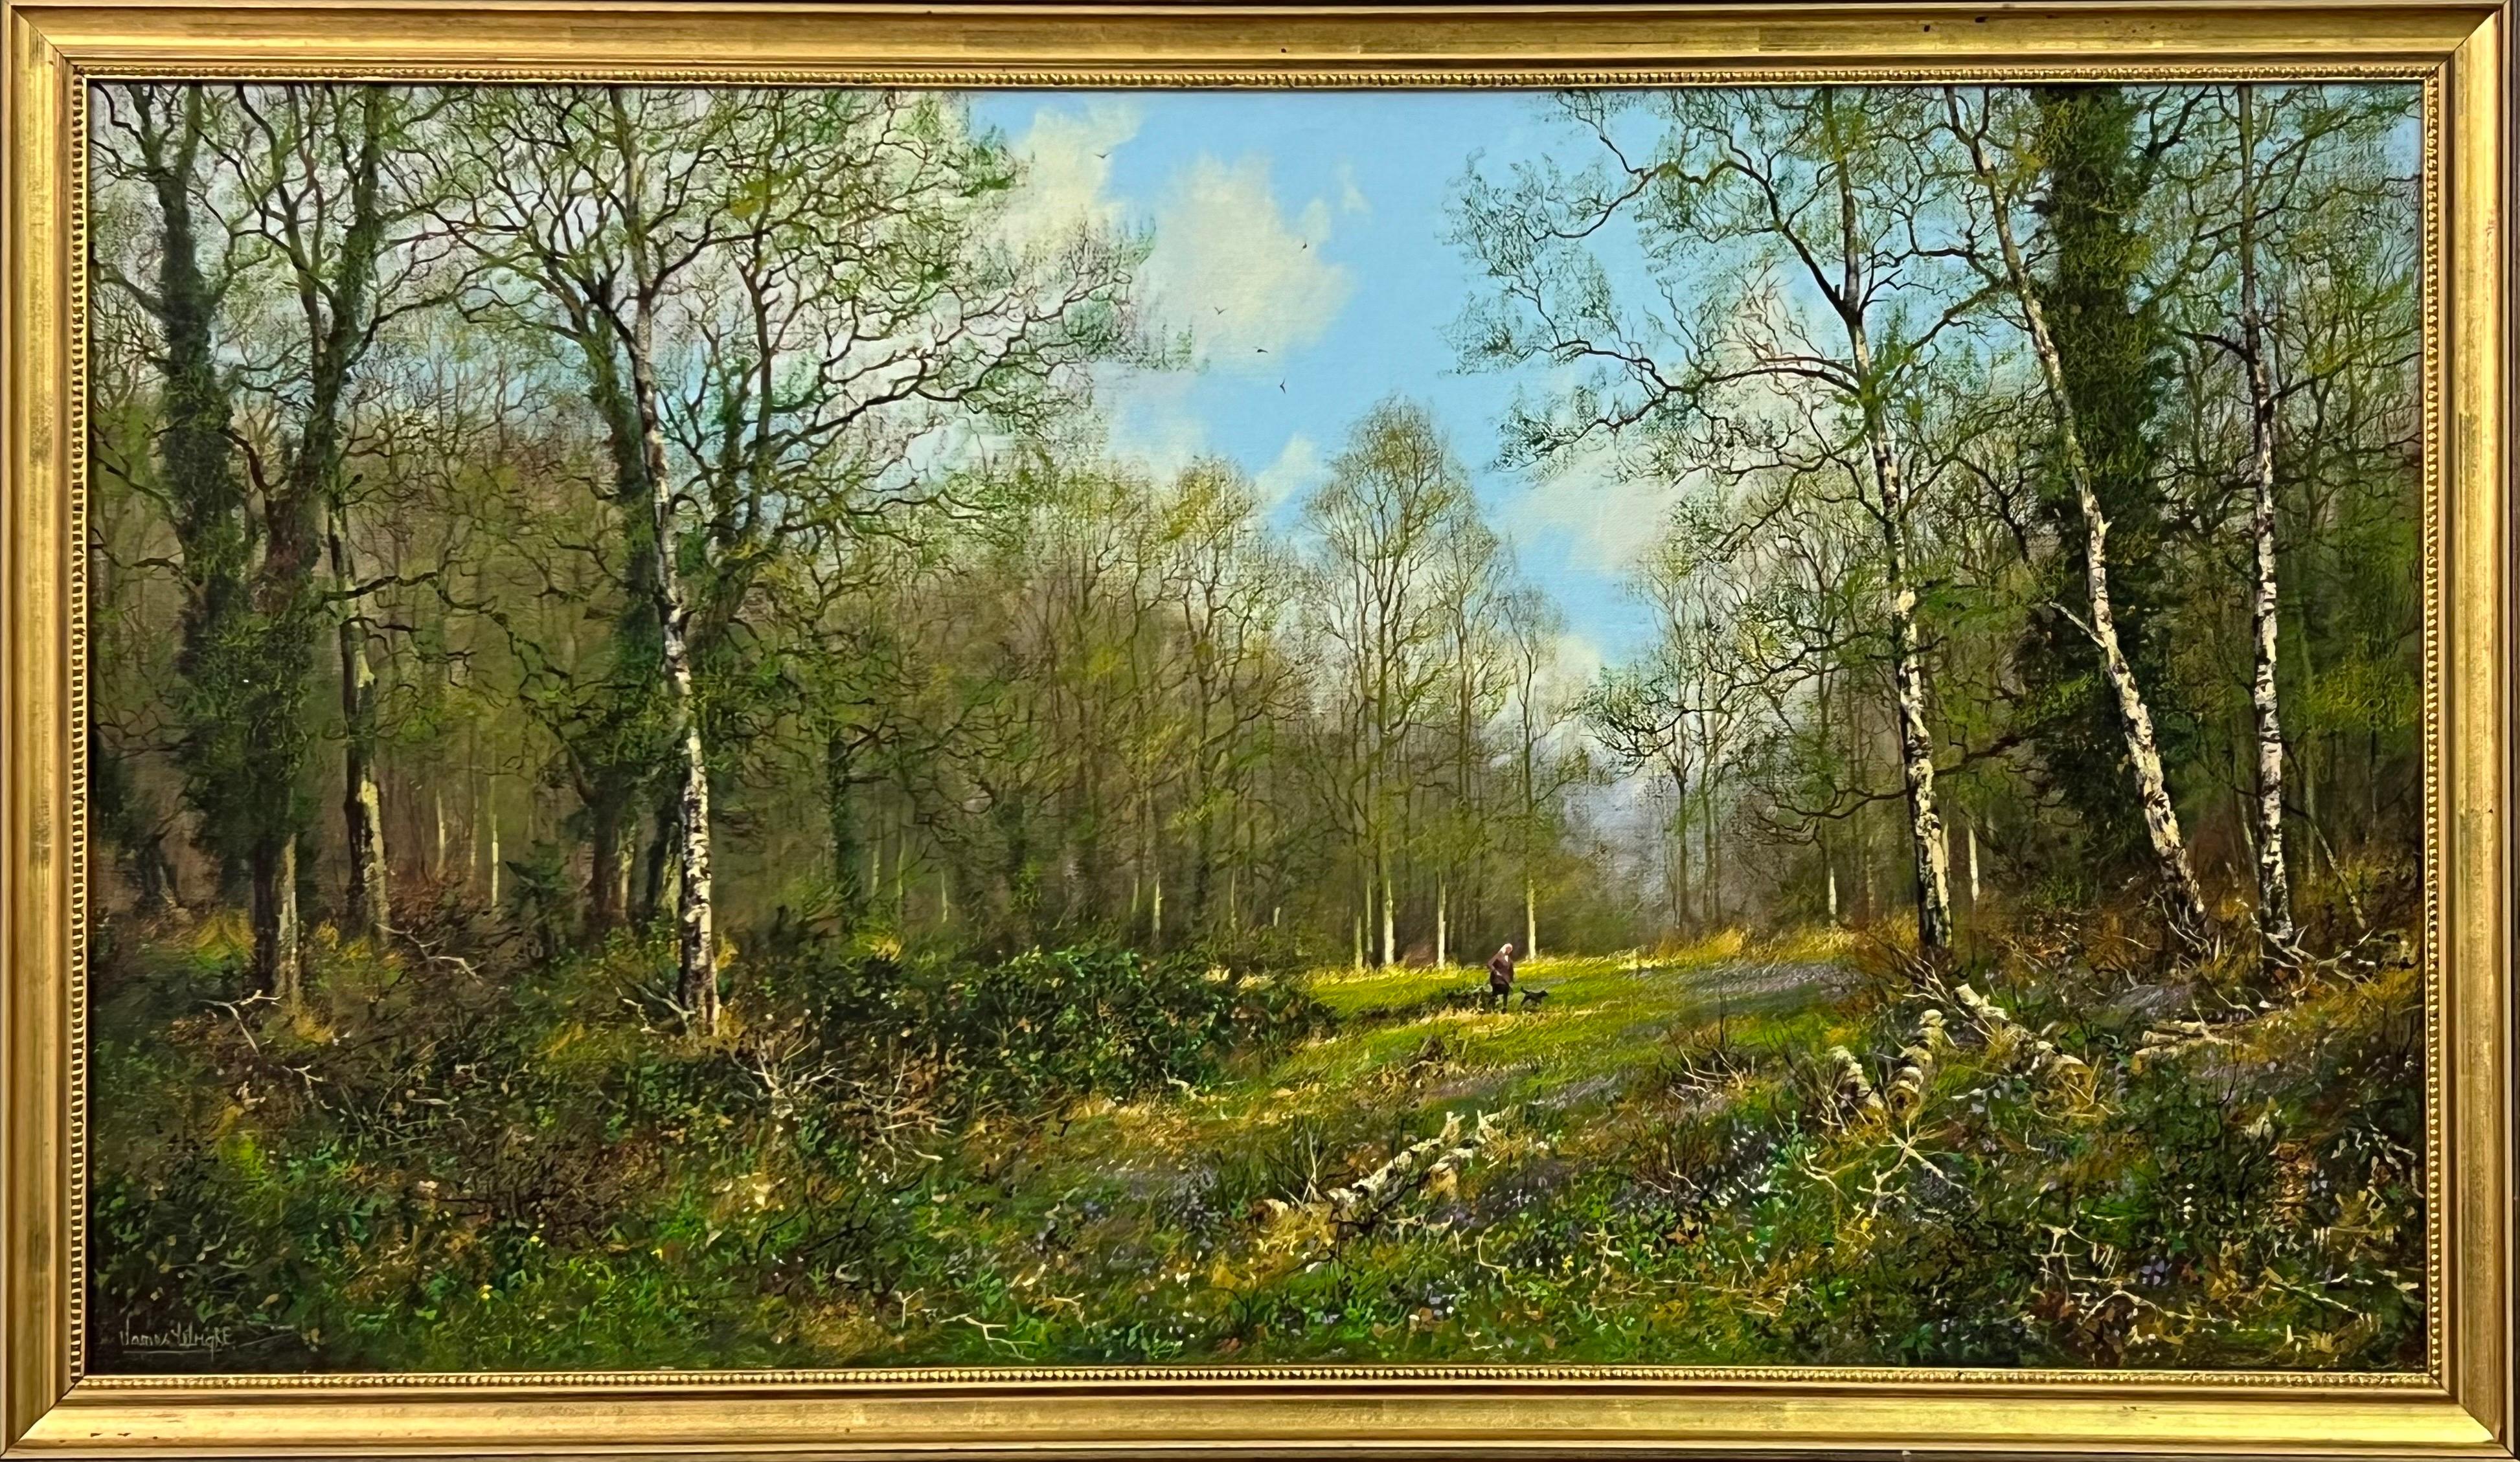 Dog Walk in a Silver Birch Woodland in der englischen Landschaft des britischen Künstlers